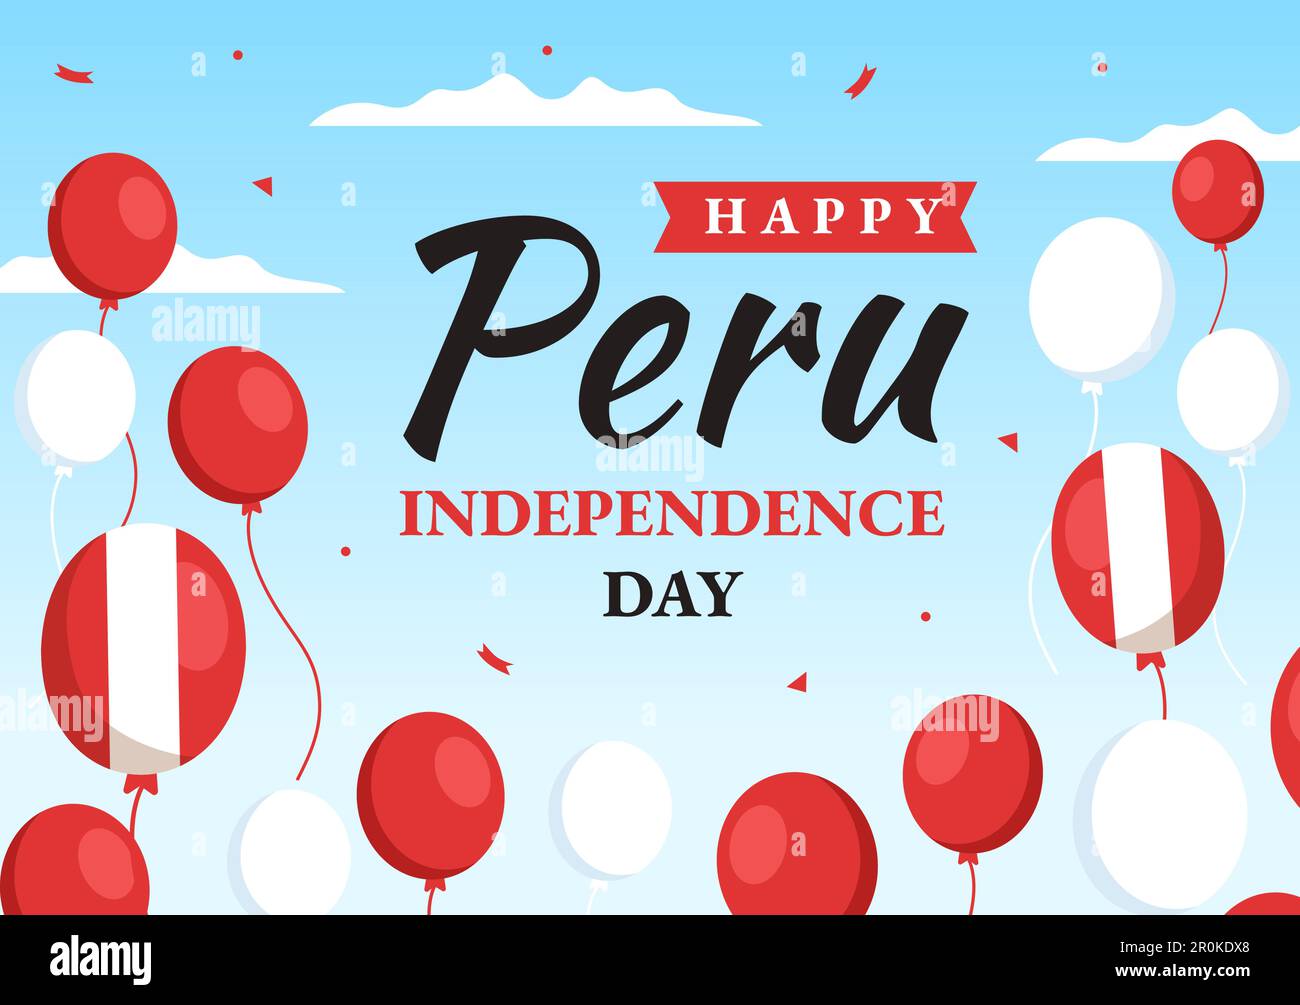 Peru Unabhängigkeitstag Vektorabbildung am 28. juli mit Waving Flag in handgezeichneten Landing-Page-Hintergrundvorlagen für National Holiday Flat Cartoon Stock Vektor